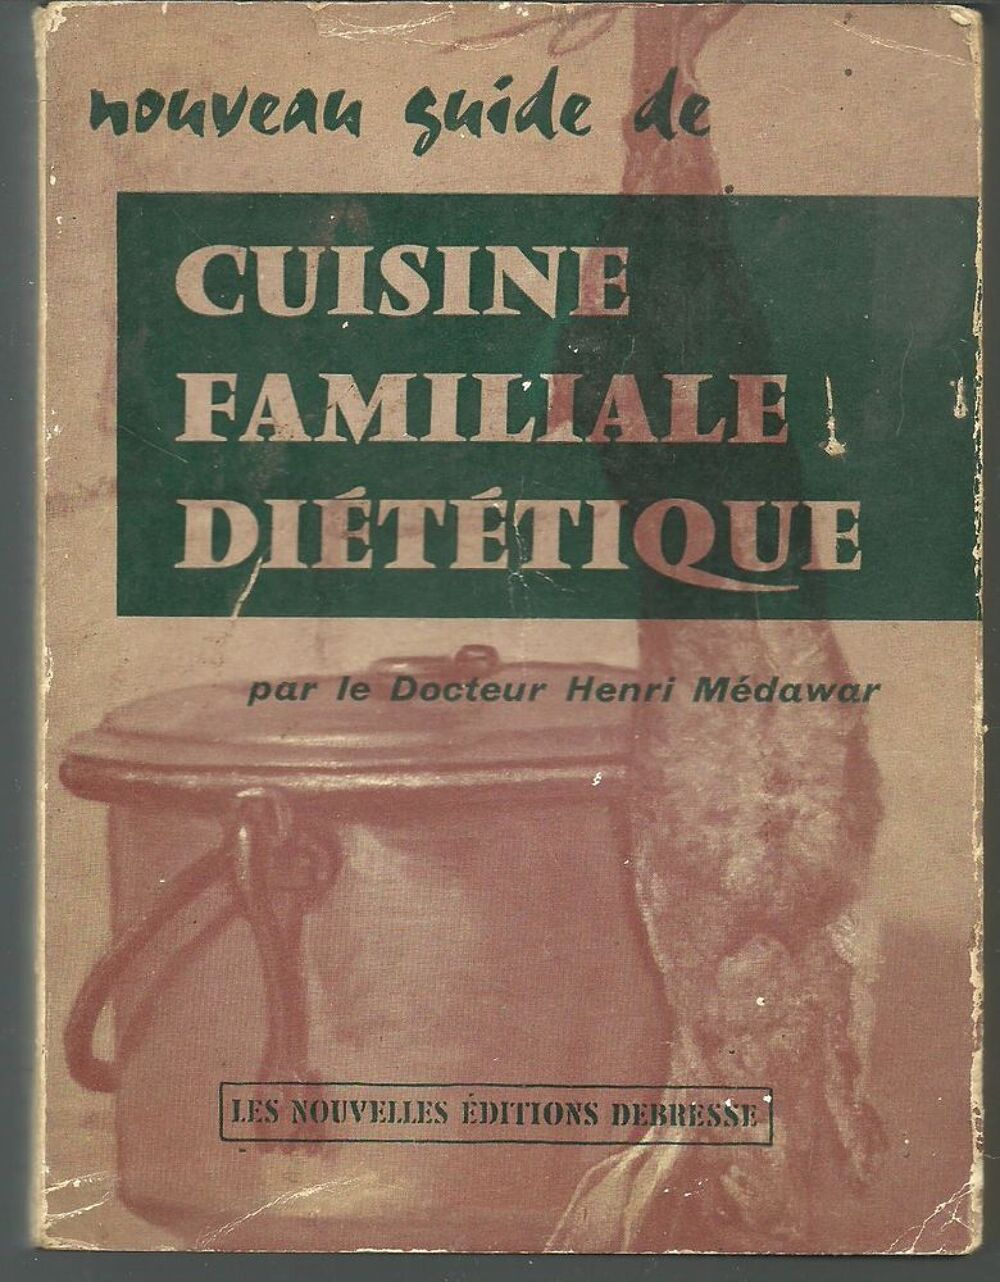 Nouveau guide de cuisine familiale di&eacute;t&eacute;tique par le Dr MEDAWAR - 1961 Livres et BD